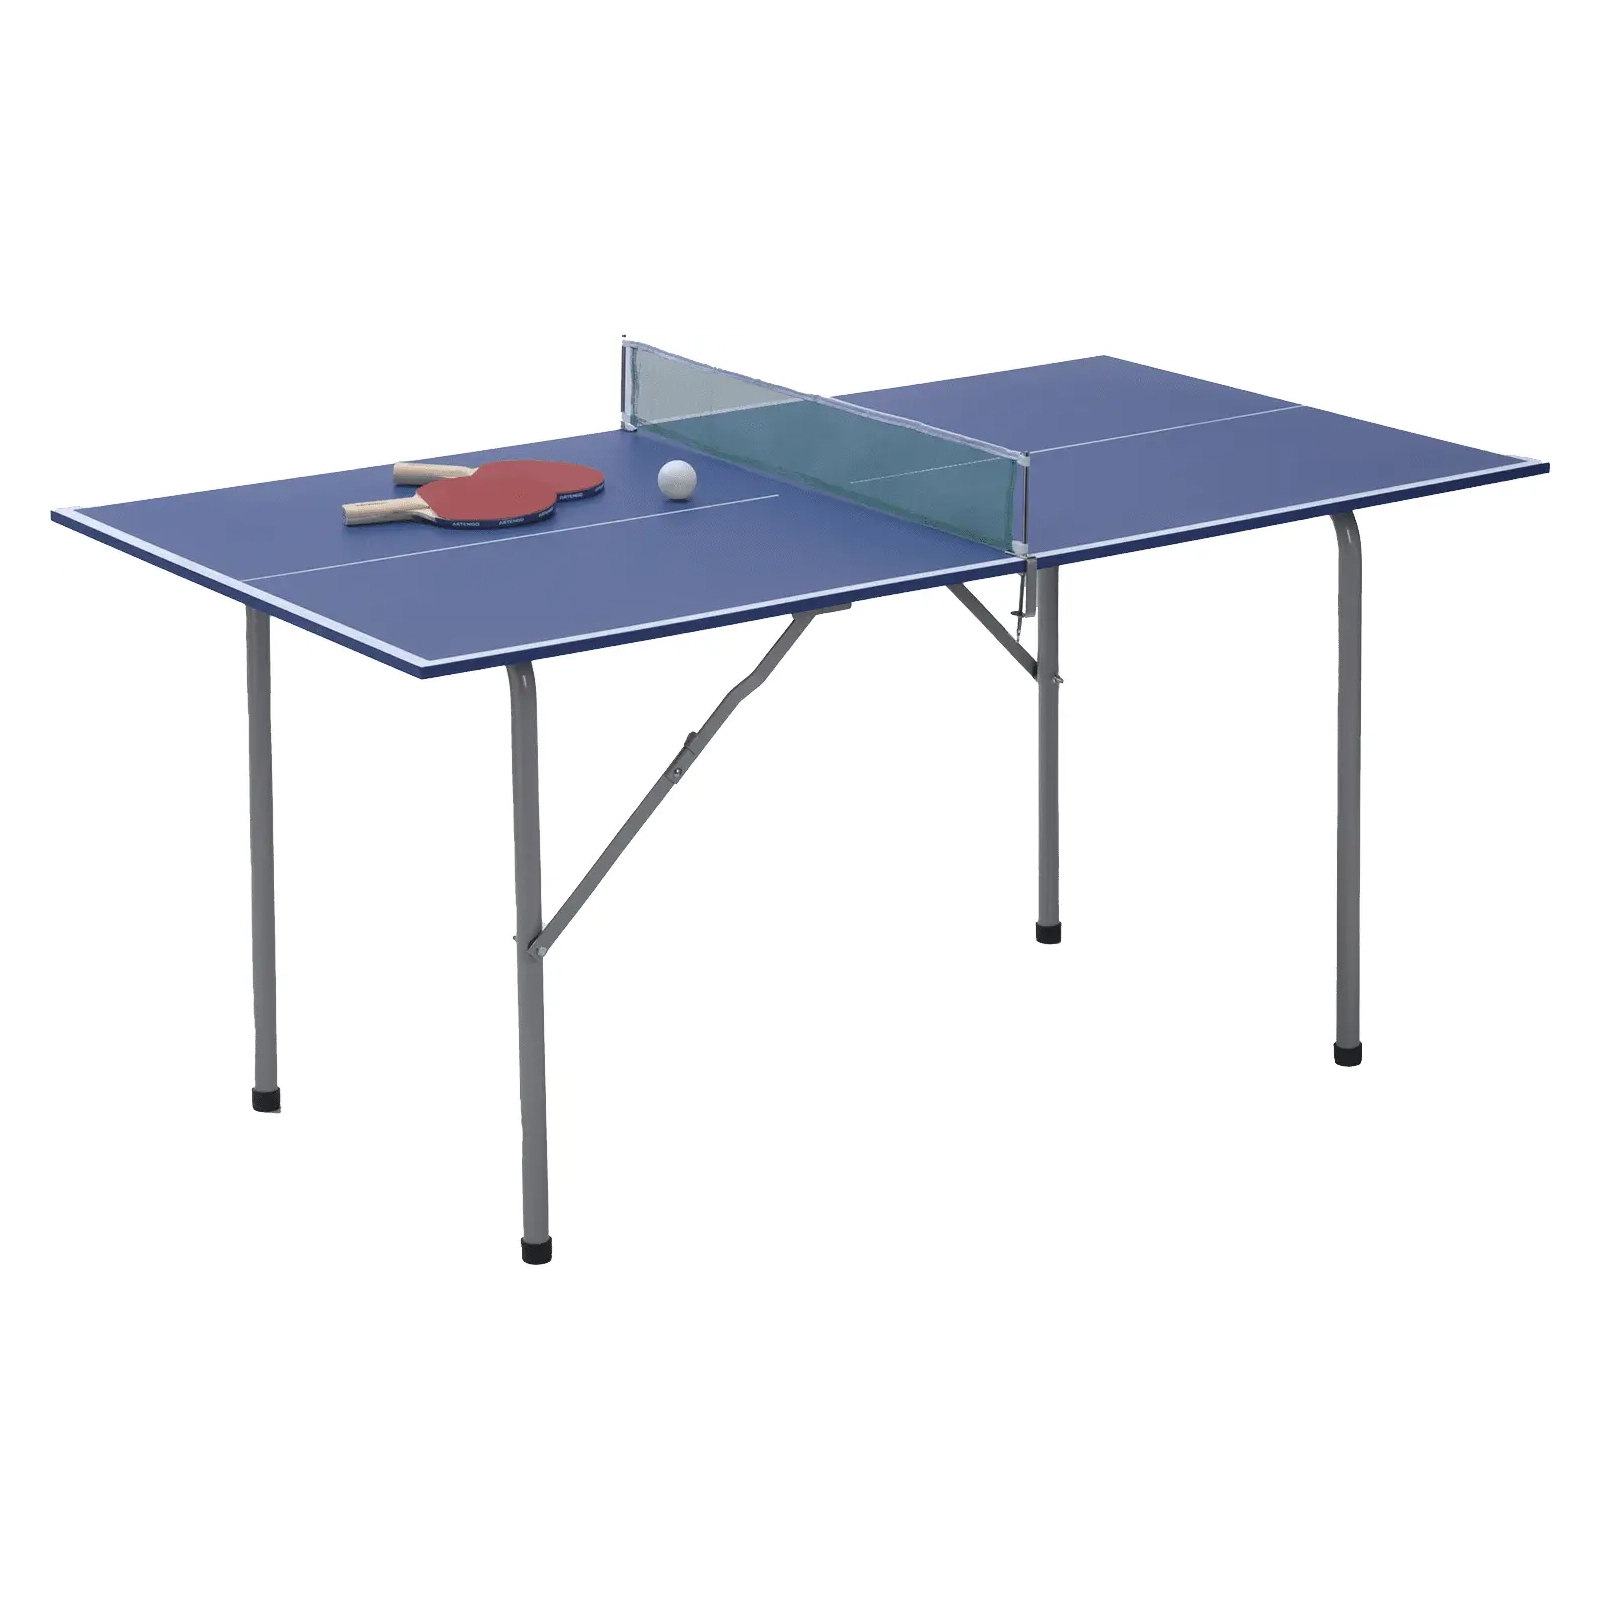 Теннисный стол Garlando Junior 12 mm Blue (C-21) (930618)